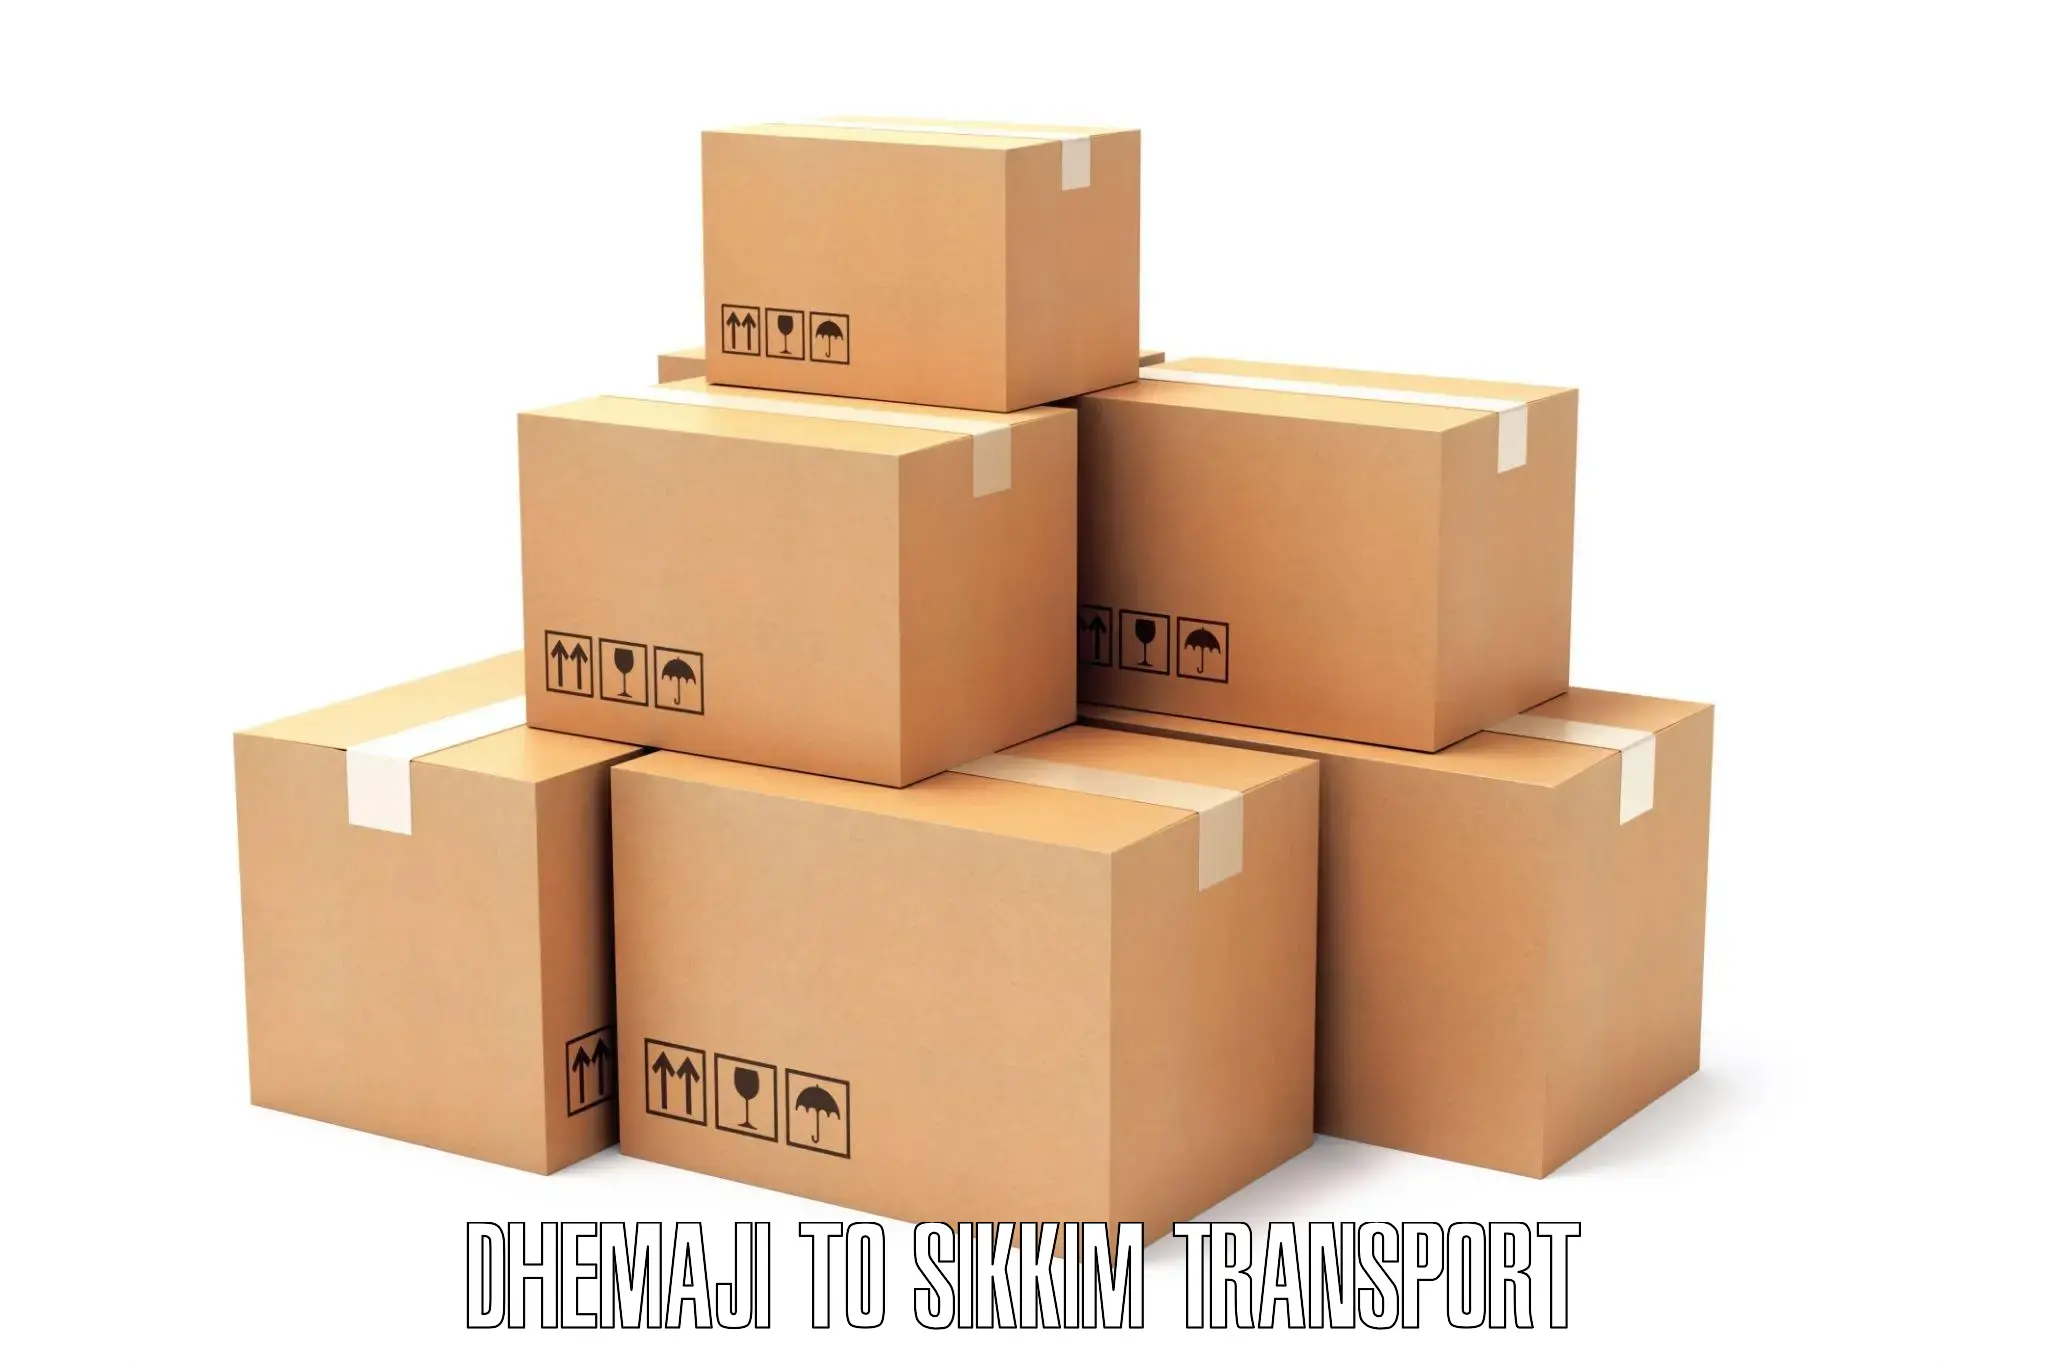 Furniture transport service Dhemaji to Singtam